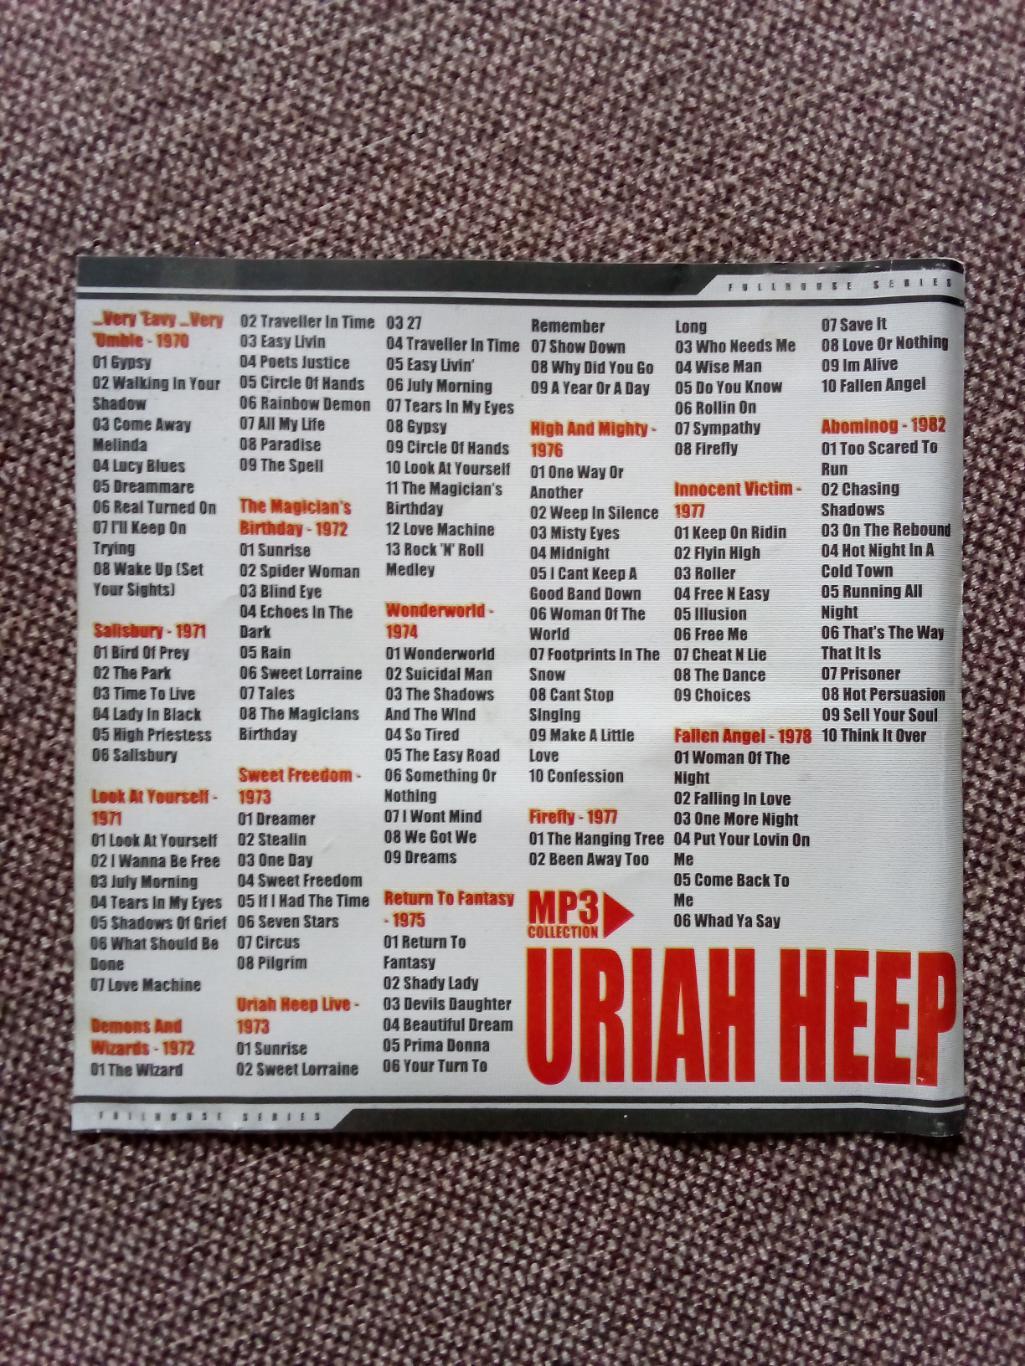 CD MP - 3 диск : группаUriah Heep1970 - 1982 гг. 14 альбомов (Рок-музыка) 3